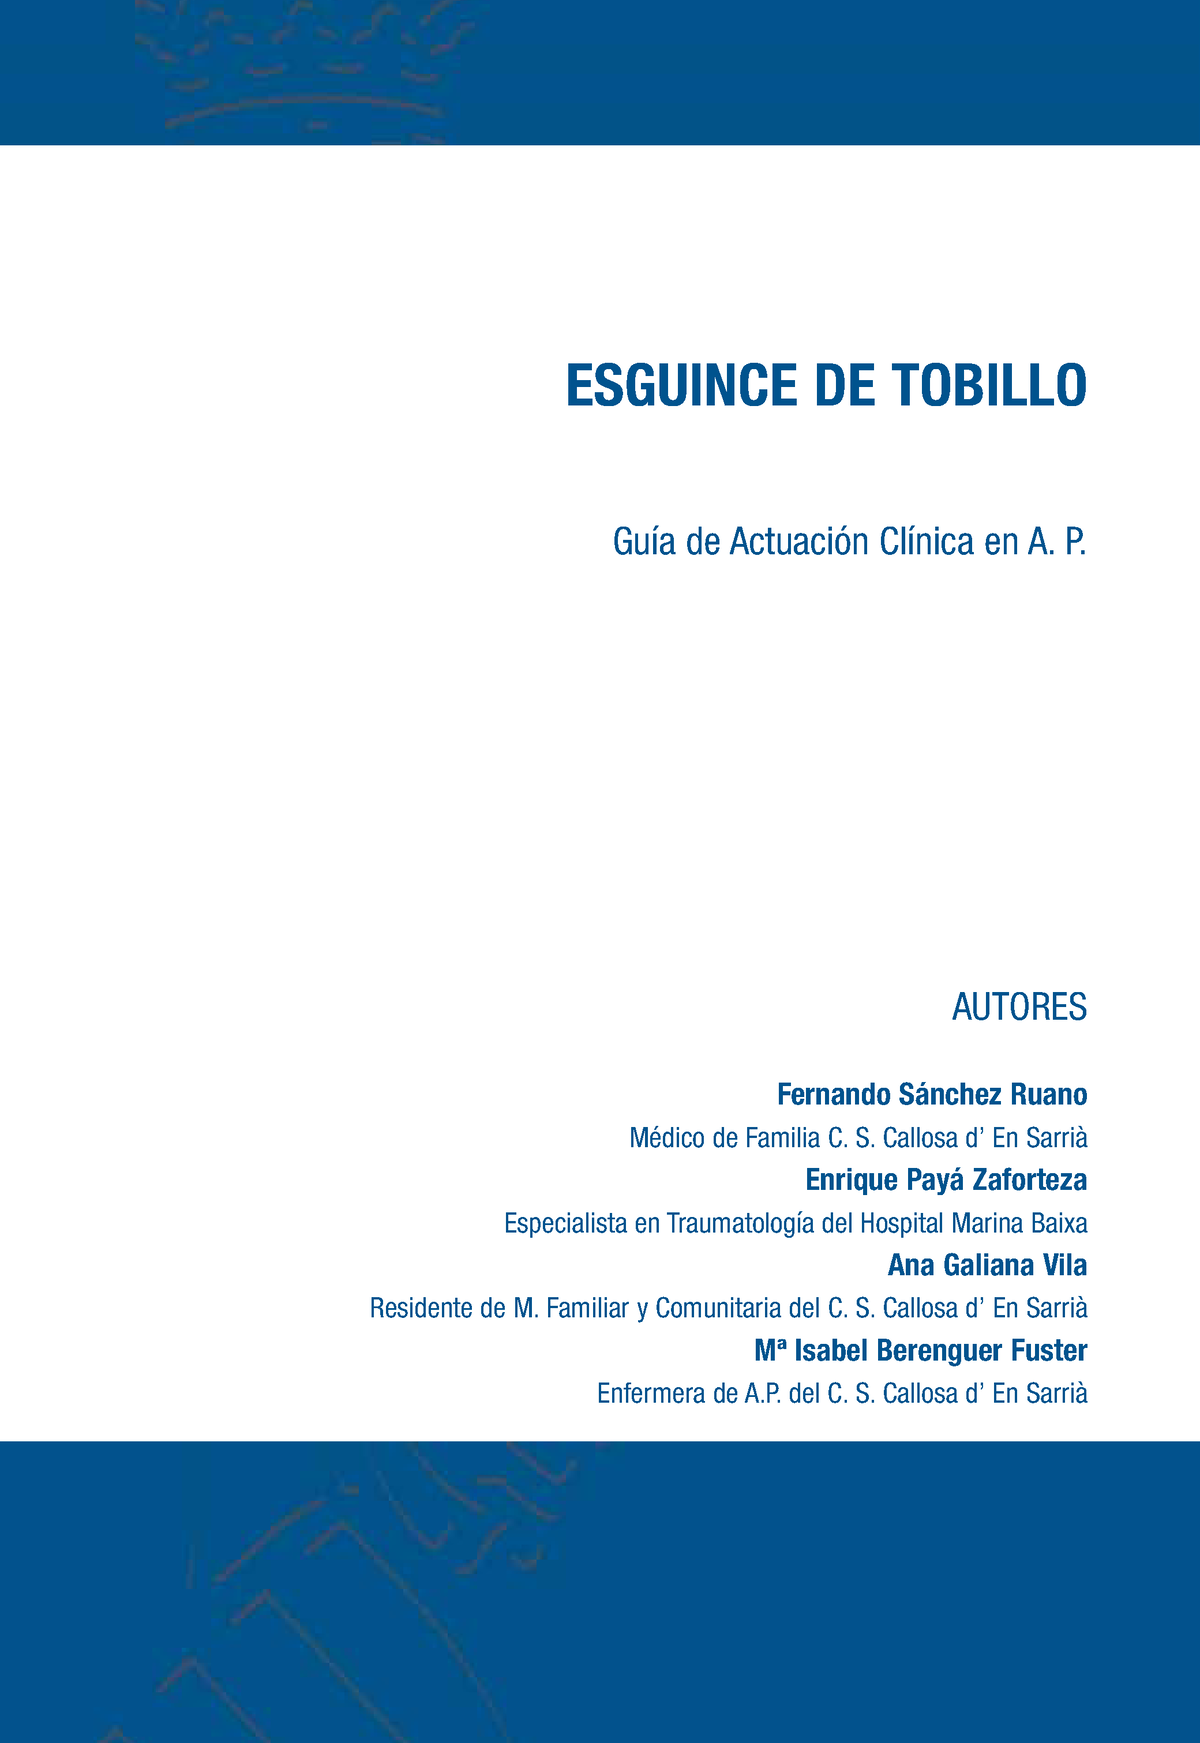 Esguince Tobillo Tratamiento - ESGUINCE DE TOBILLO Guía de Actuación  Clínica en A. P. AUTORES - Studocu